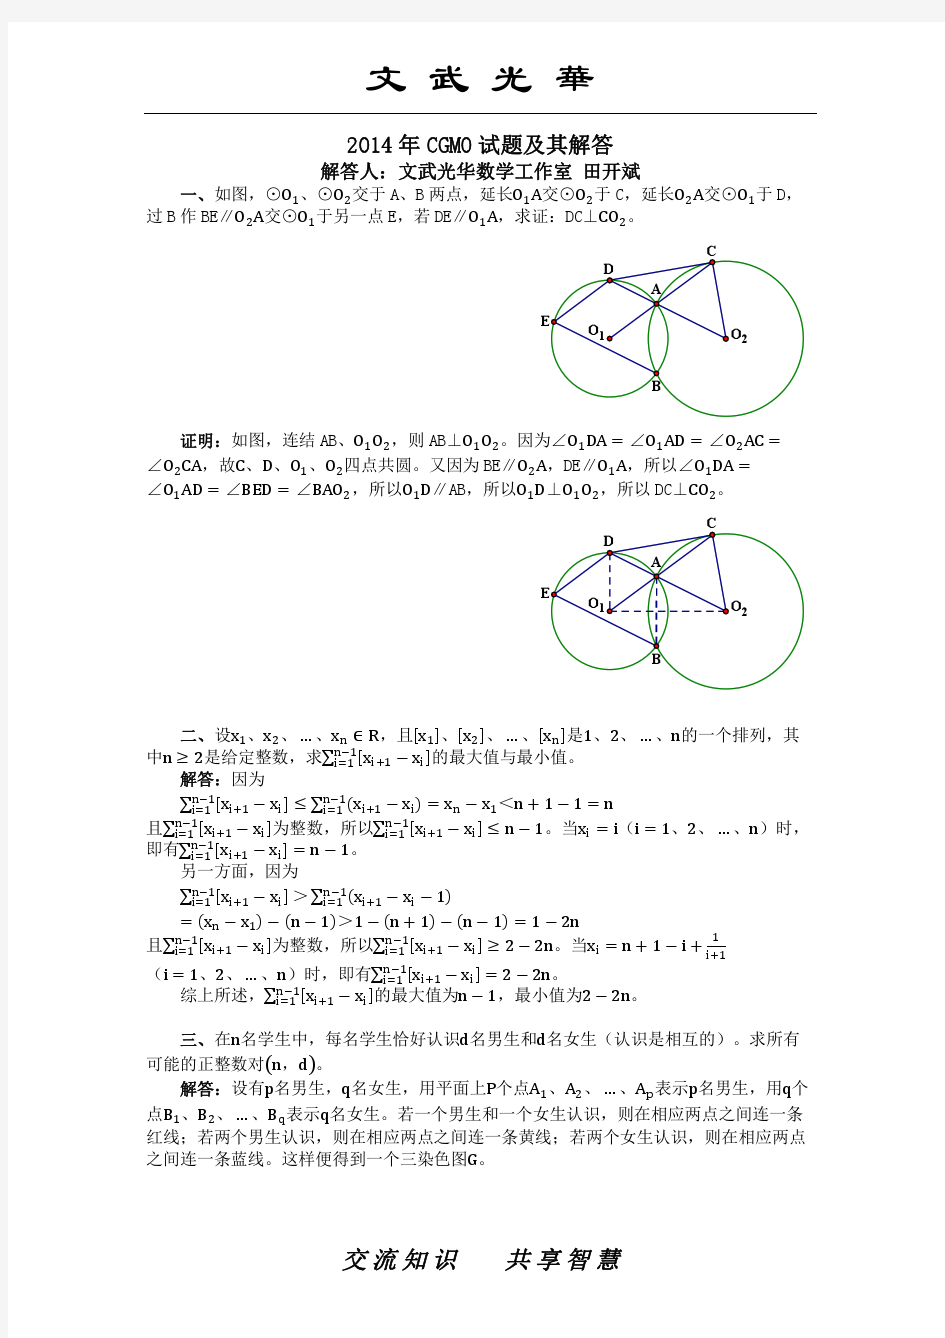 2014年中国女子数学奥林匹克(CGMO)试题及其解答